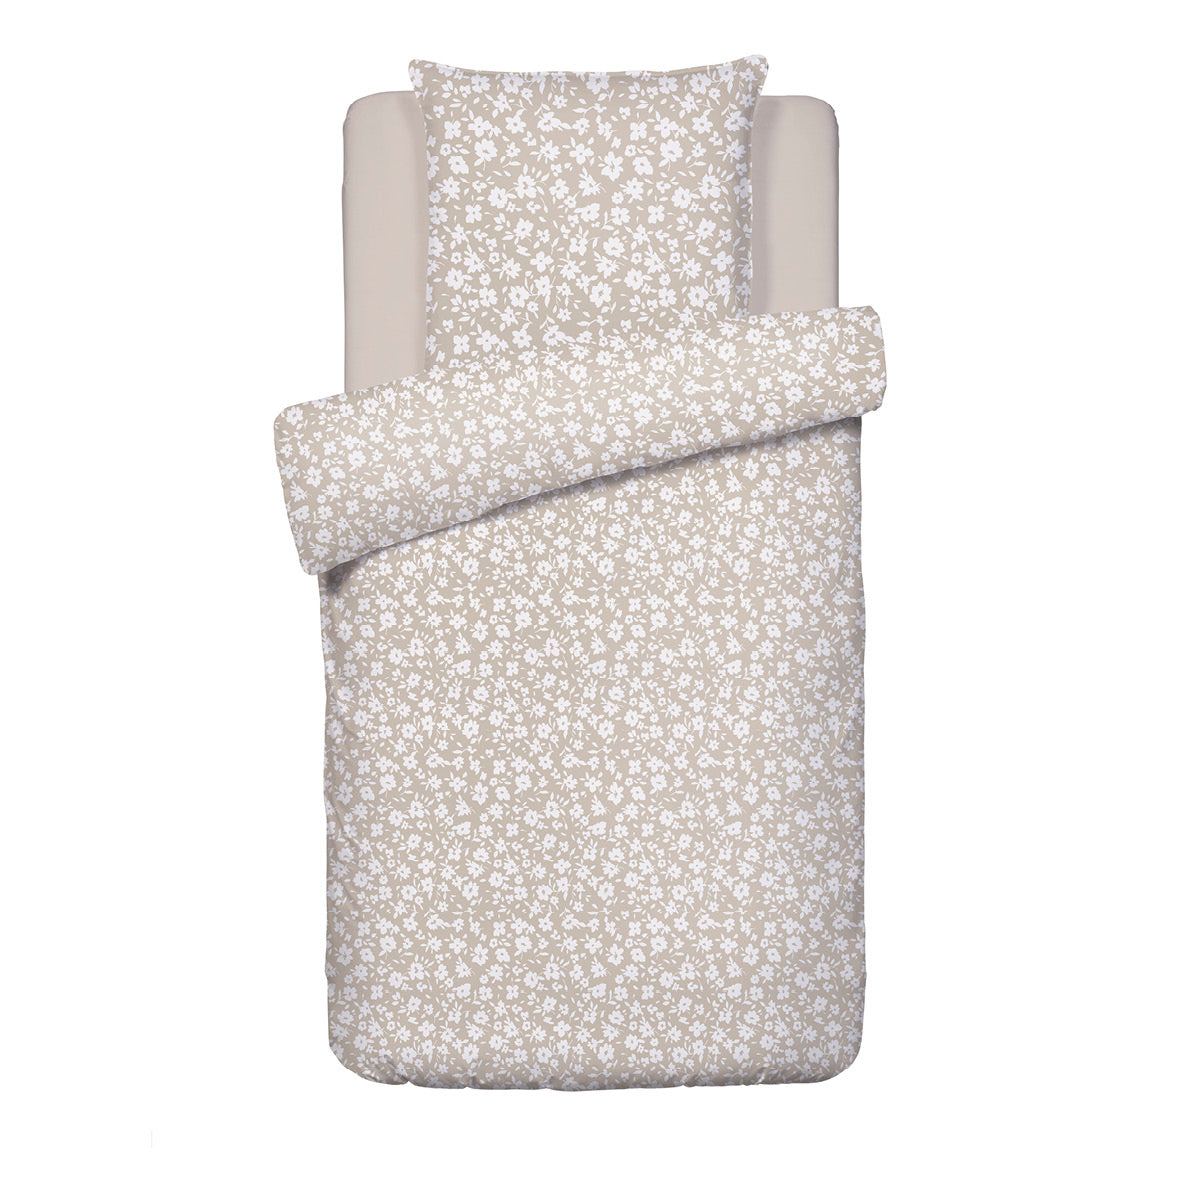 Duvet cover + pillowcase(s) cotton satin - Elégance taupe